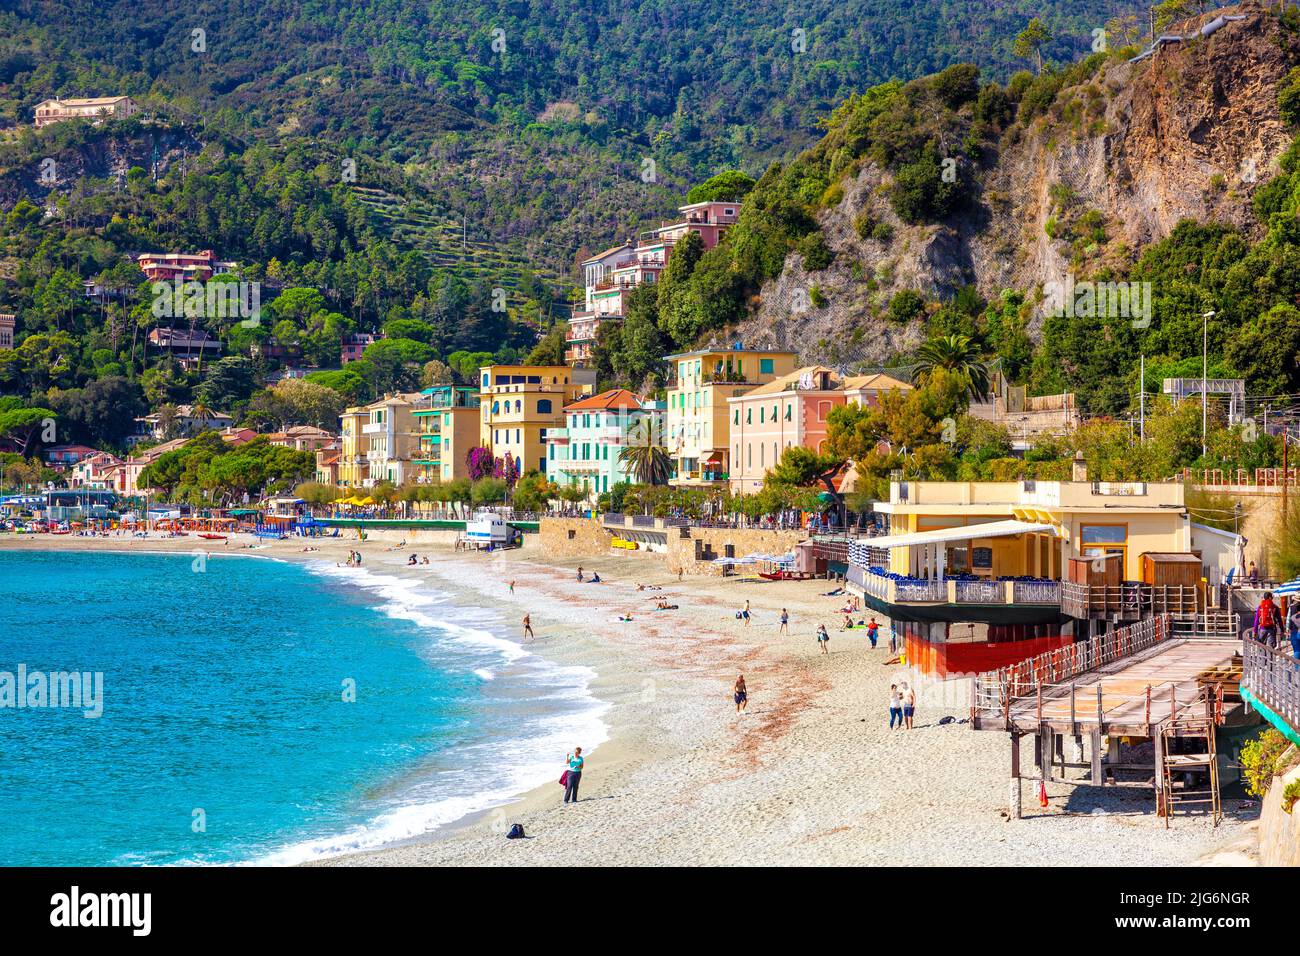 View of colourful houses and beach in Monterosso Al Mare, Cinque Terre, La Spezia, Italy Stock Photo